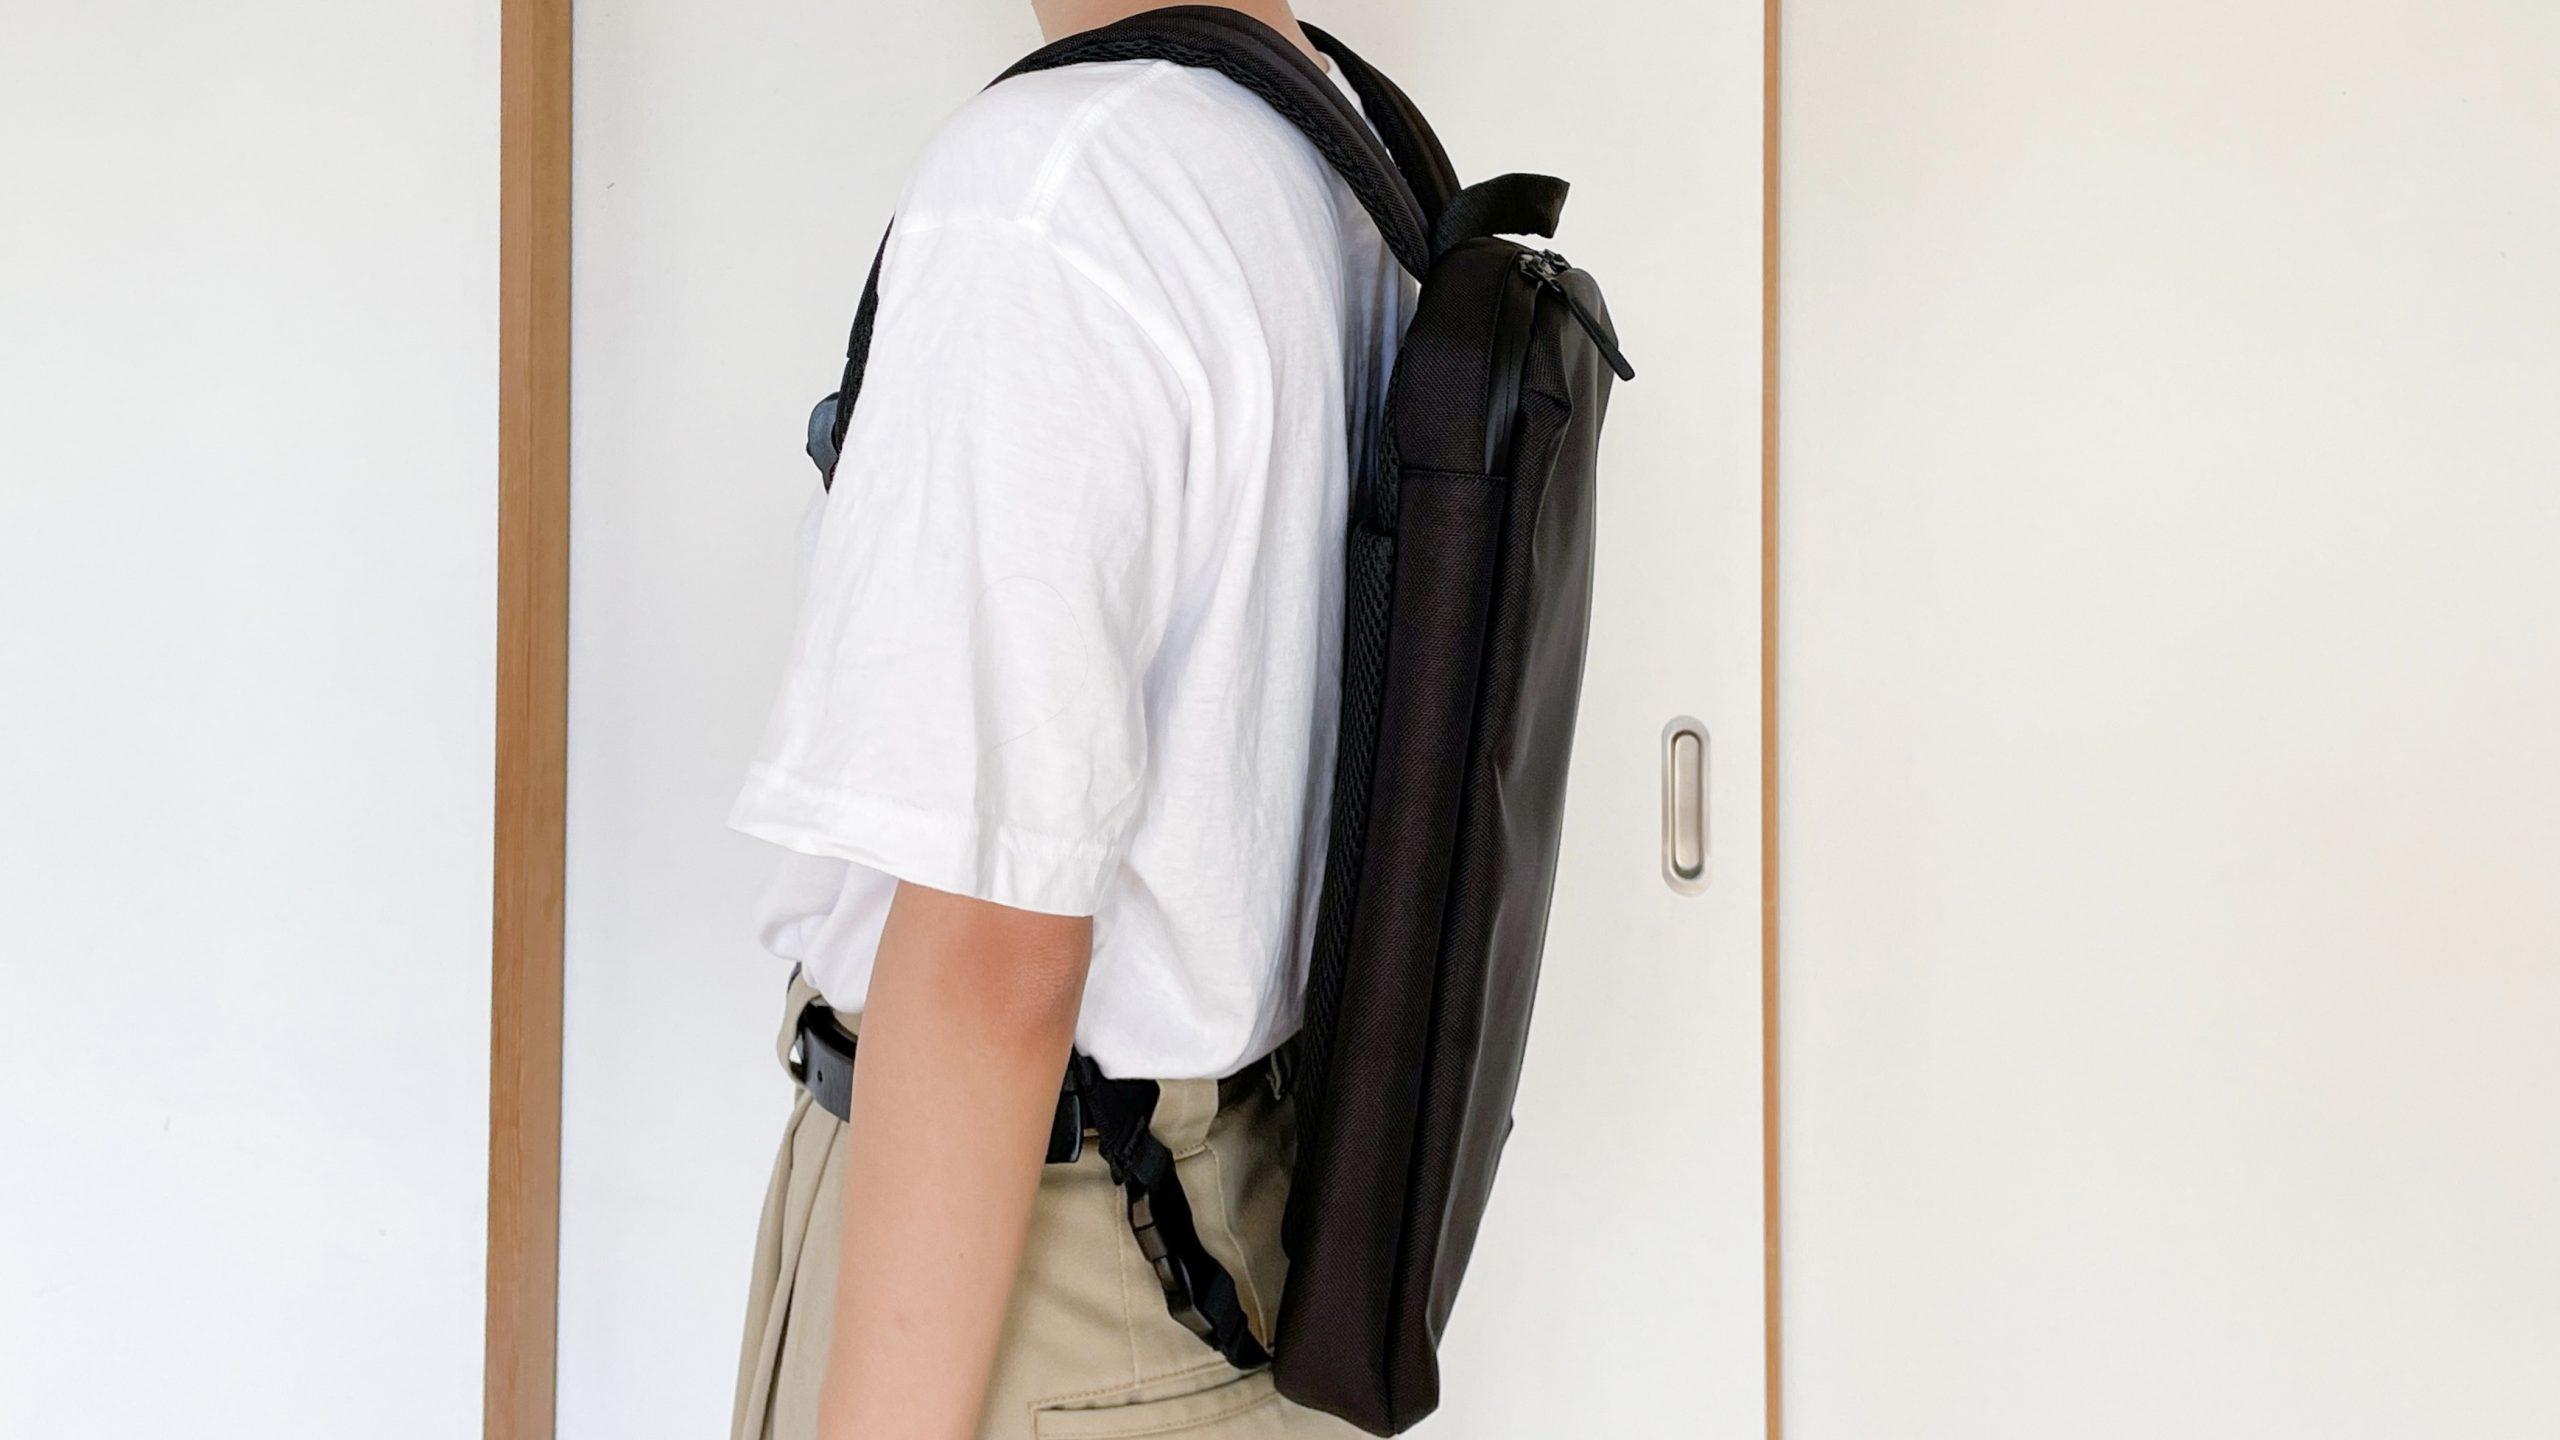 ユニクロの3WAYバッグ、「PCを持ち運びたいけど大きなバッグはいらない